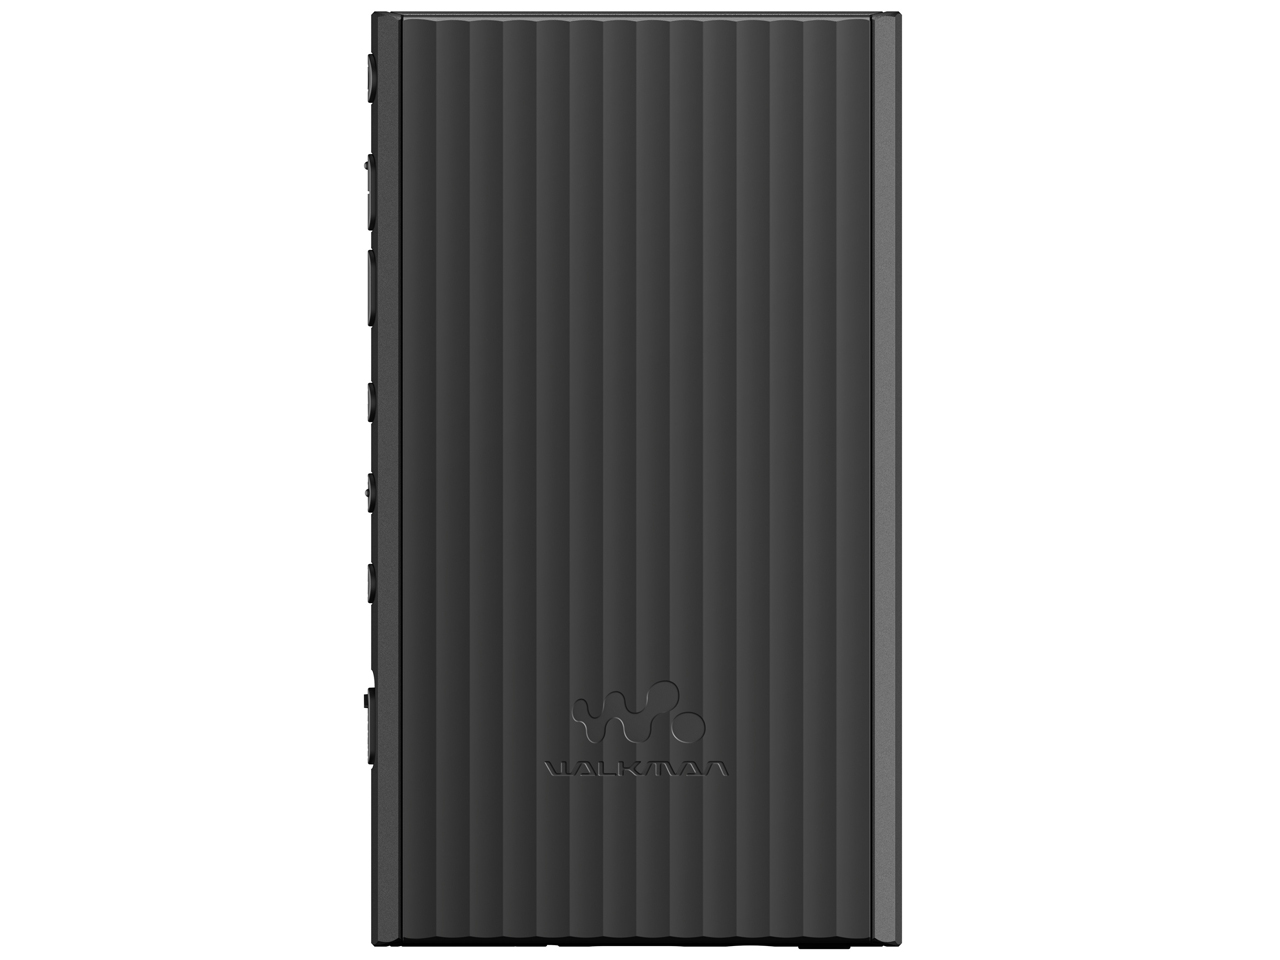 SONY NW-A306 (B) [32GB ブラック]